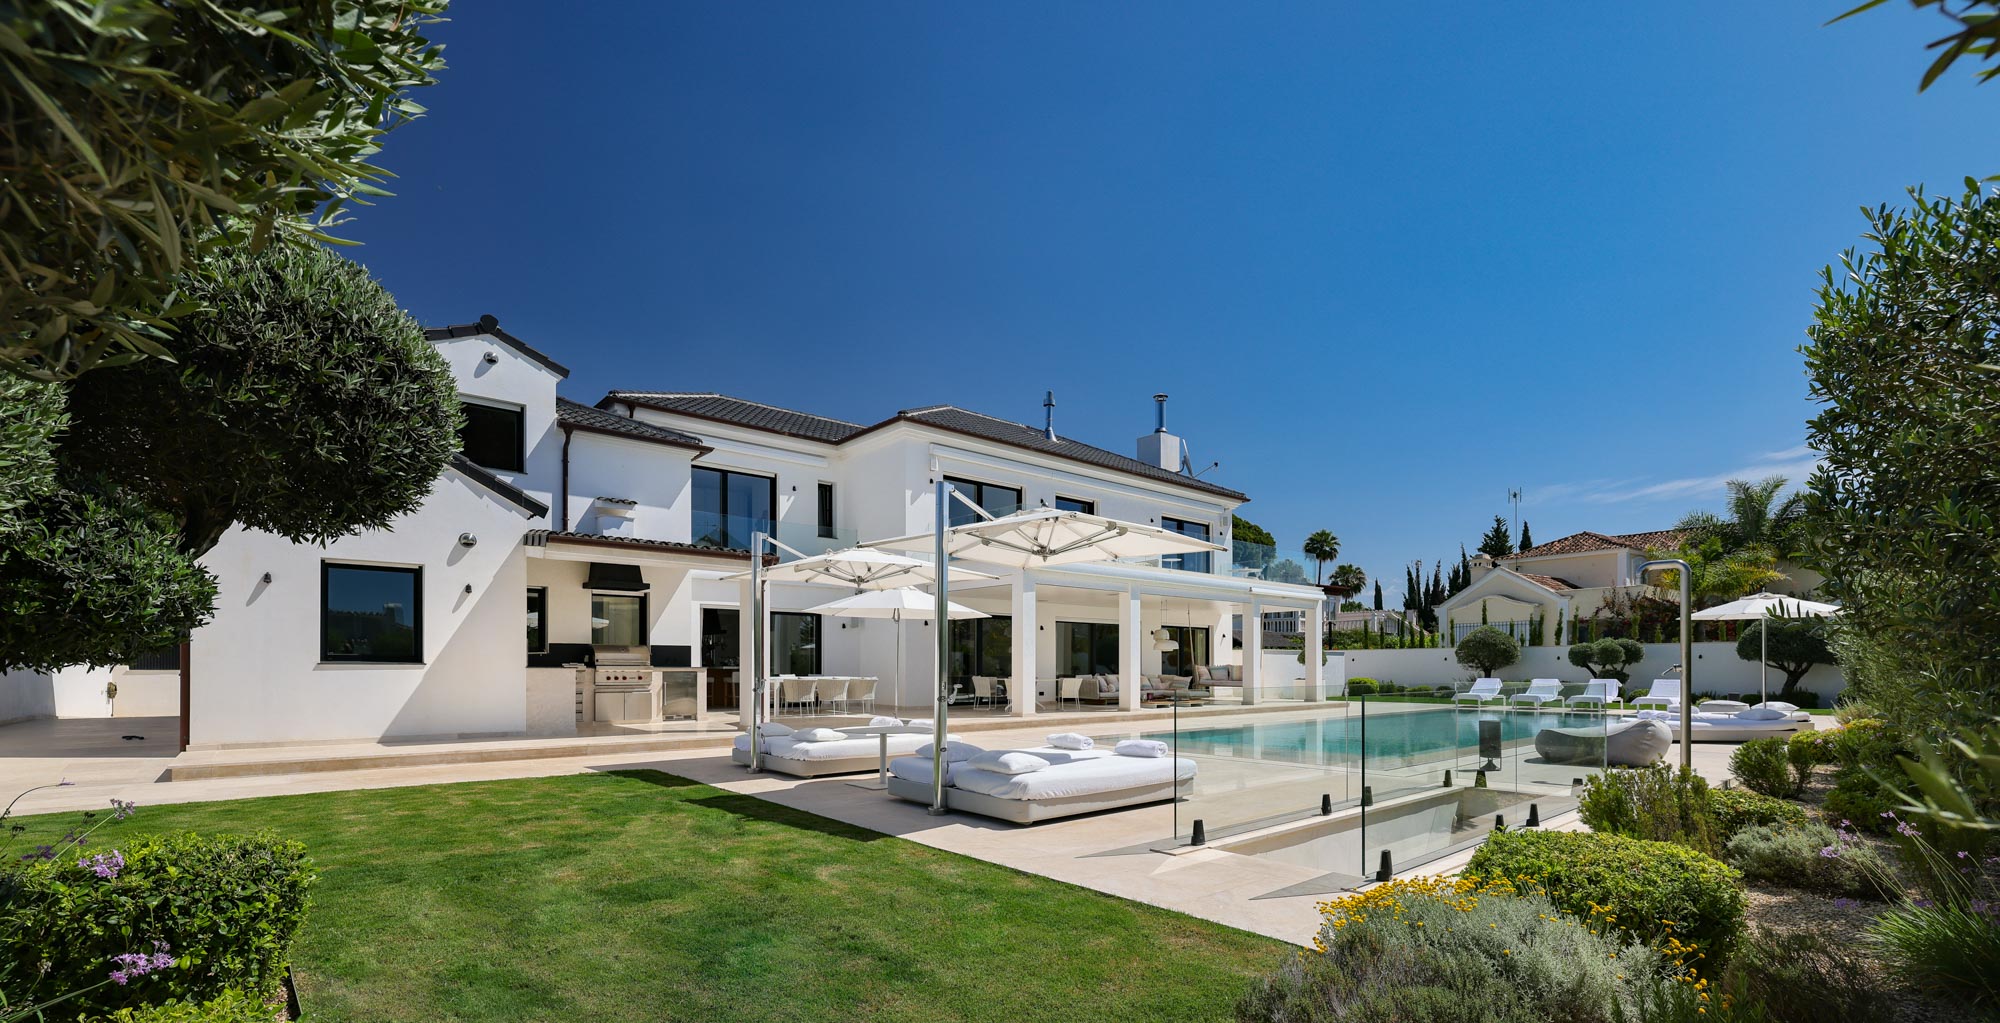 Garden & luxury pool area: Villa Elisa